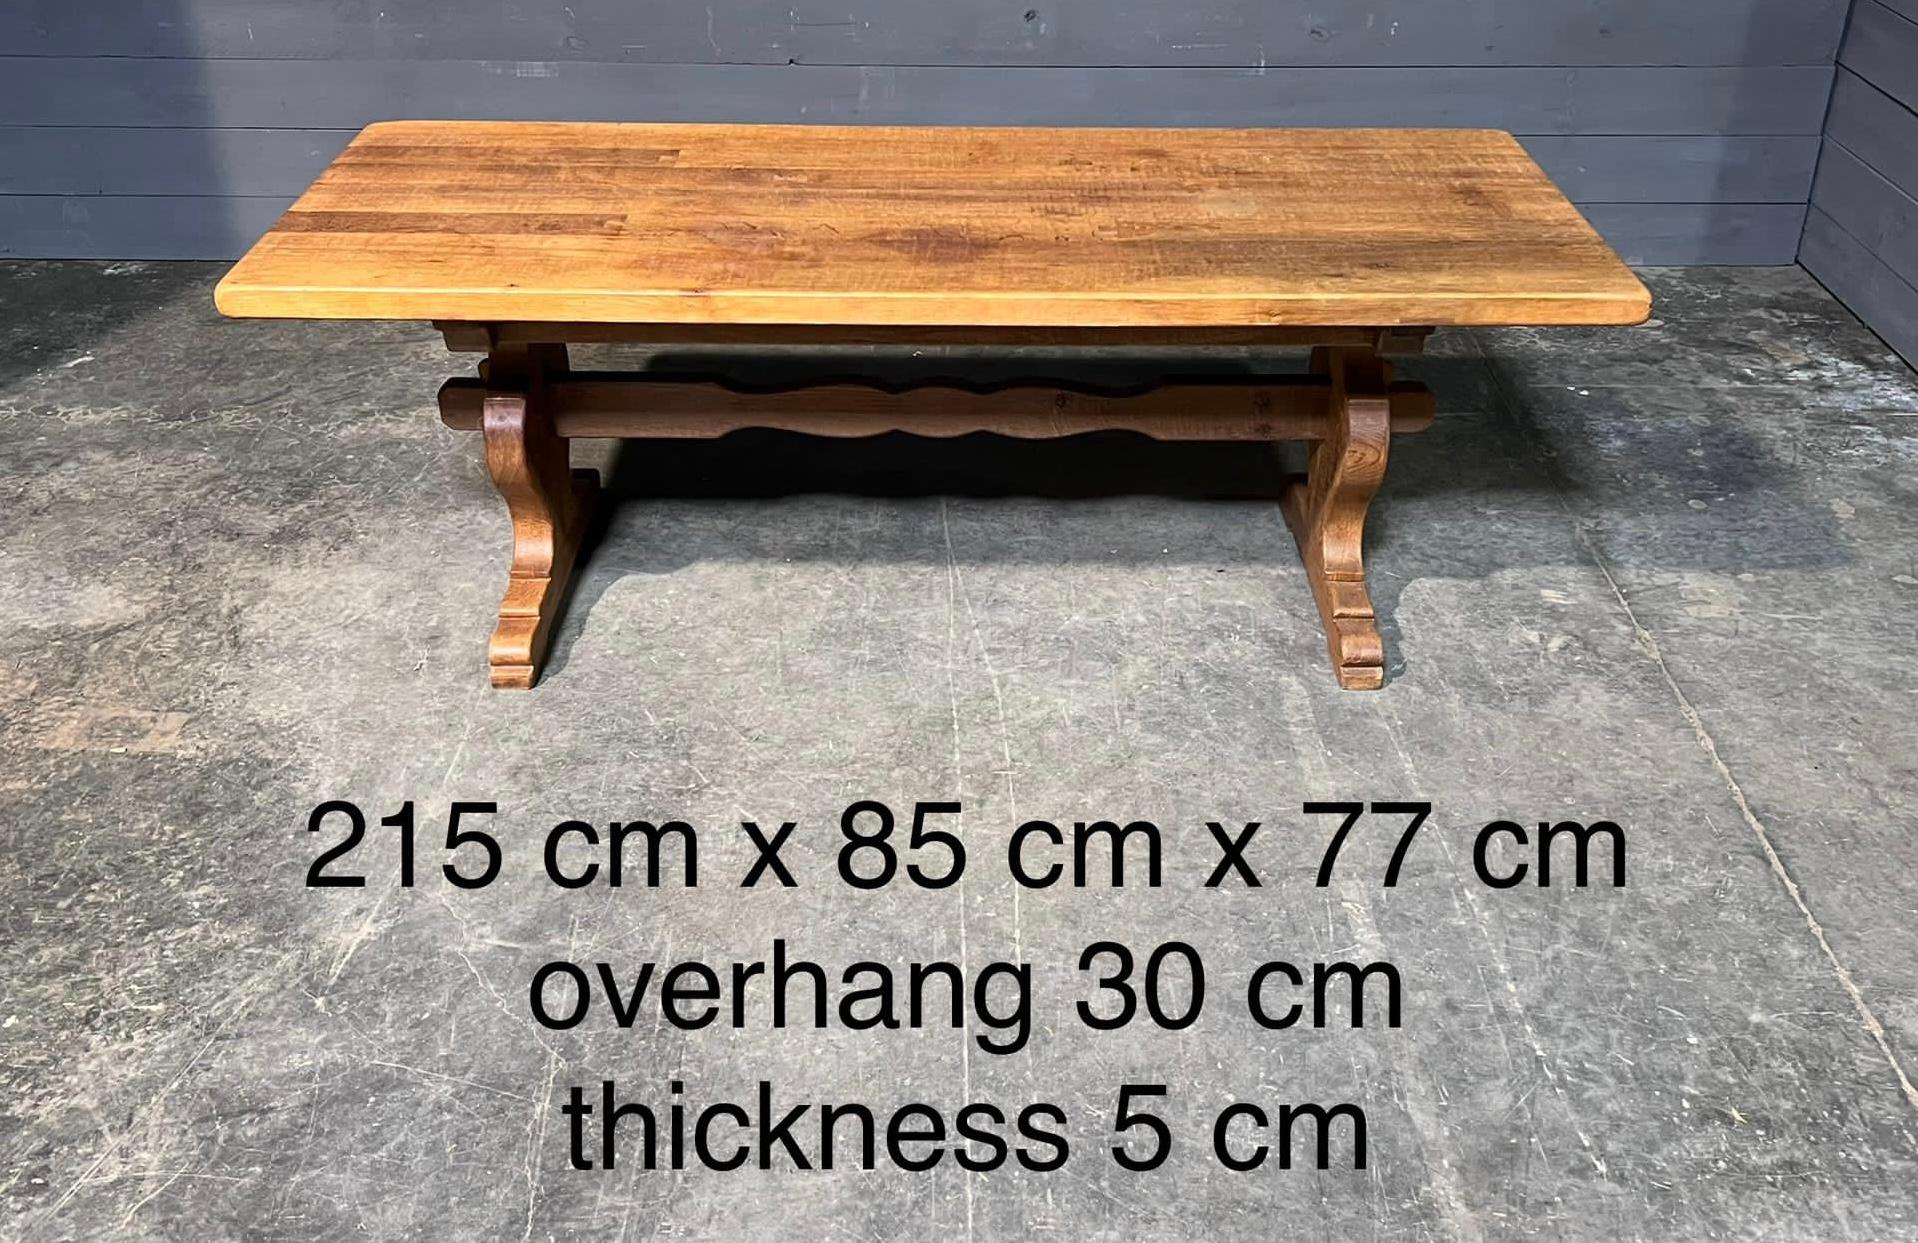 Ein heller originalfarbener französischer Bauernhoftisch aus massivem Eichenholz, der als Refektorium dient. Es stammt aus den frühen 1900er Jahren und ist von hervorragender Bauqualität. Der Tisch lässt sich für einen einfachen Zugang in die